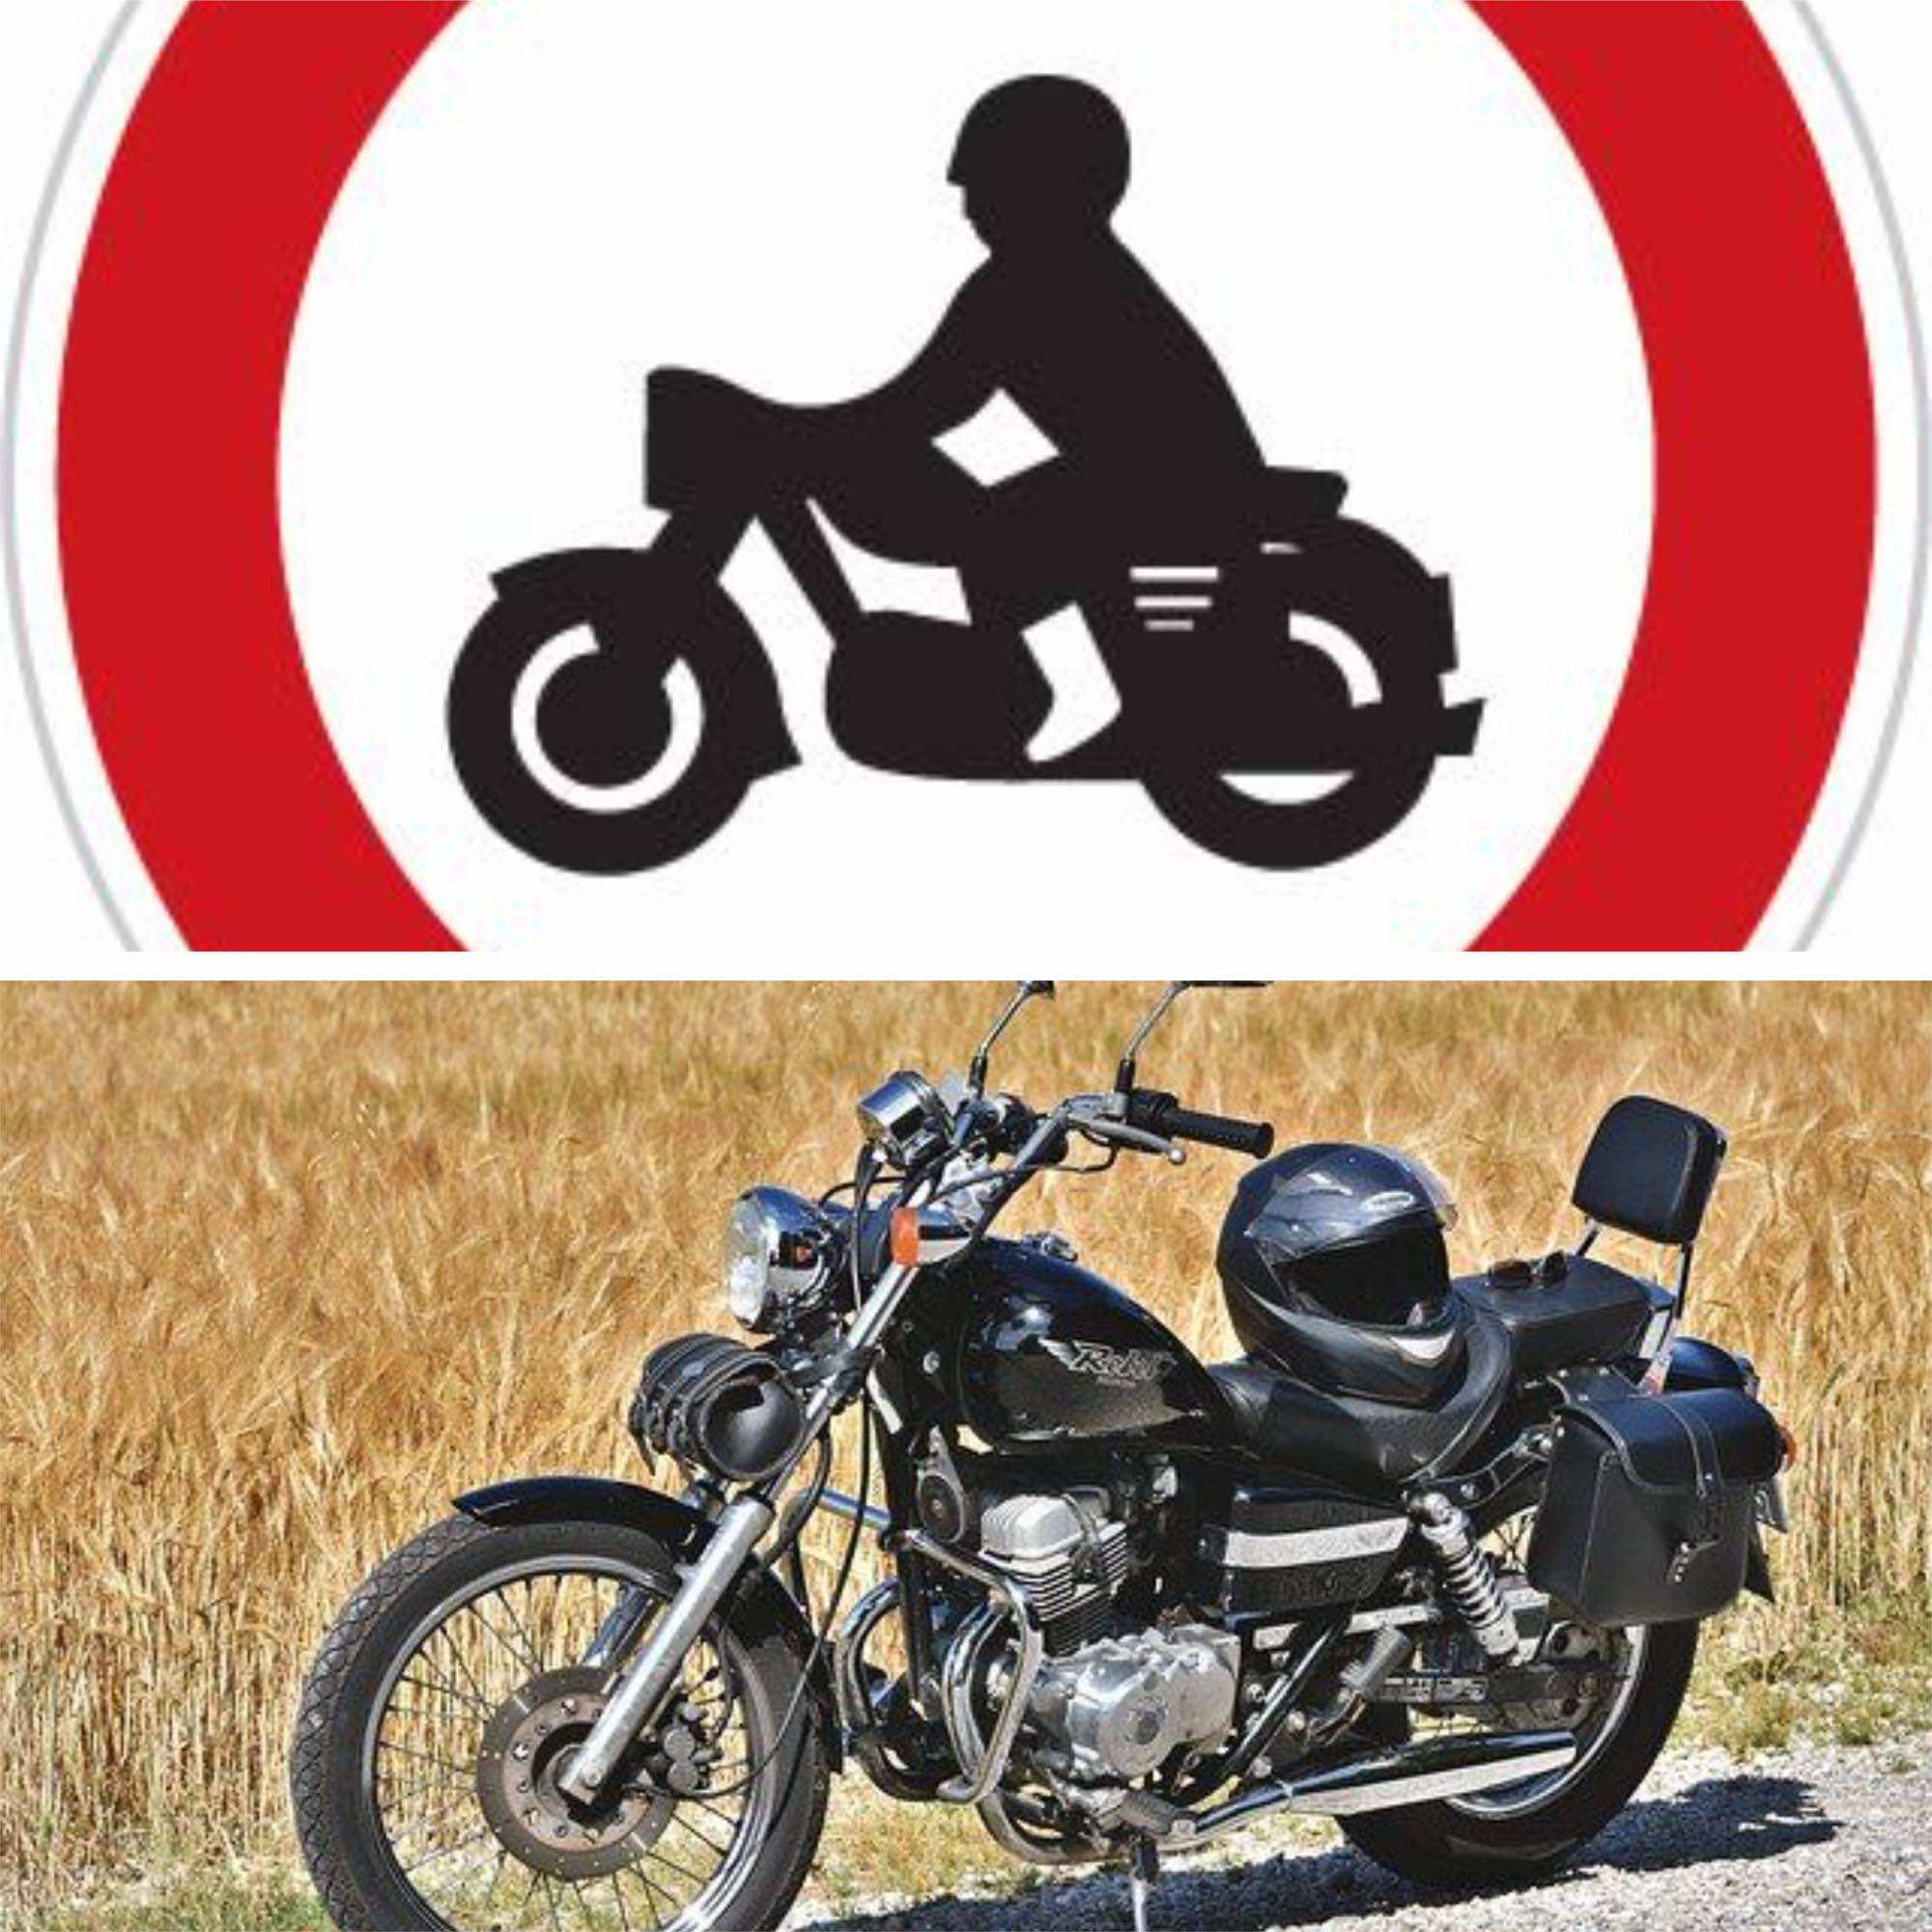 σήμανση απαγόρευσης μοτοσικλέτας και μοτοσικλέτα παρκαρισμένη στο δρόμο